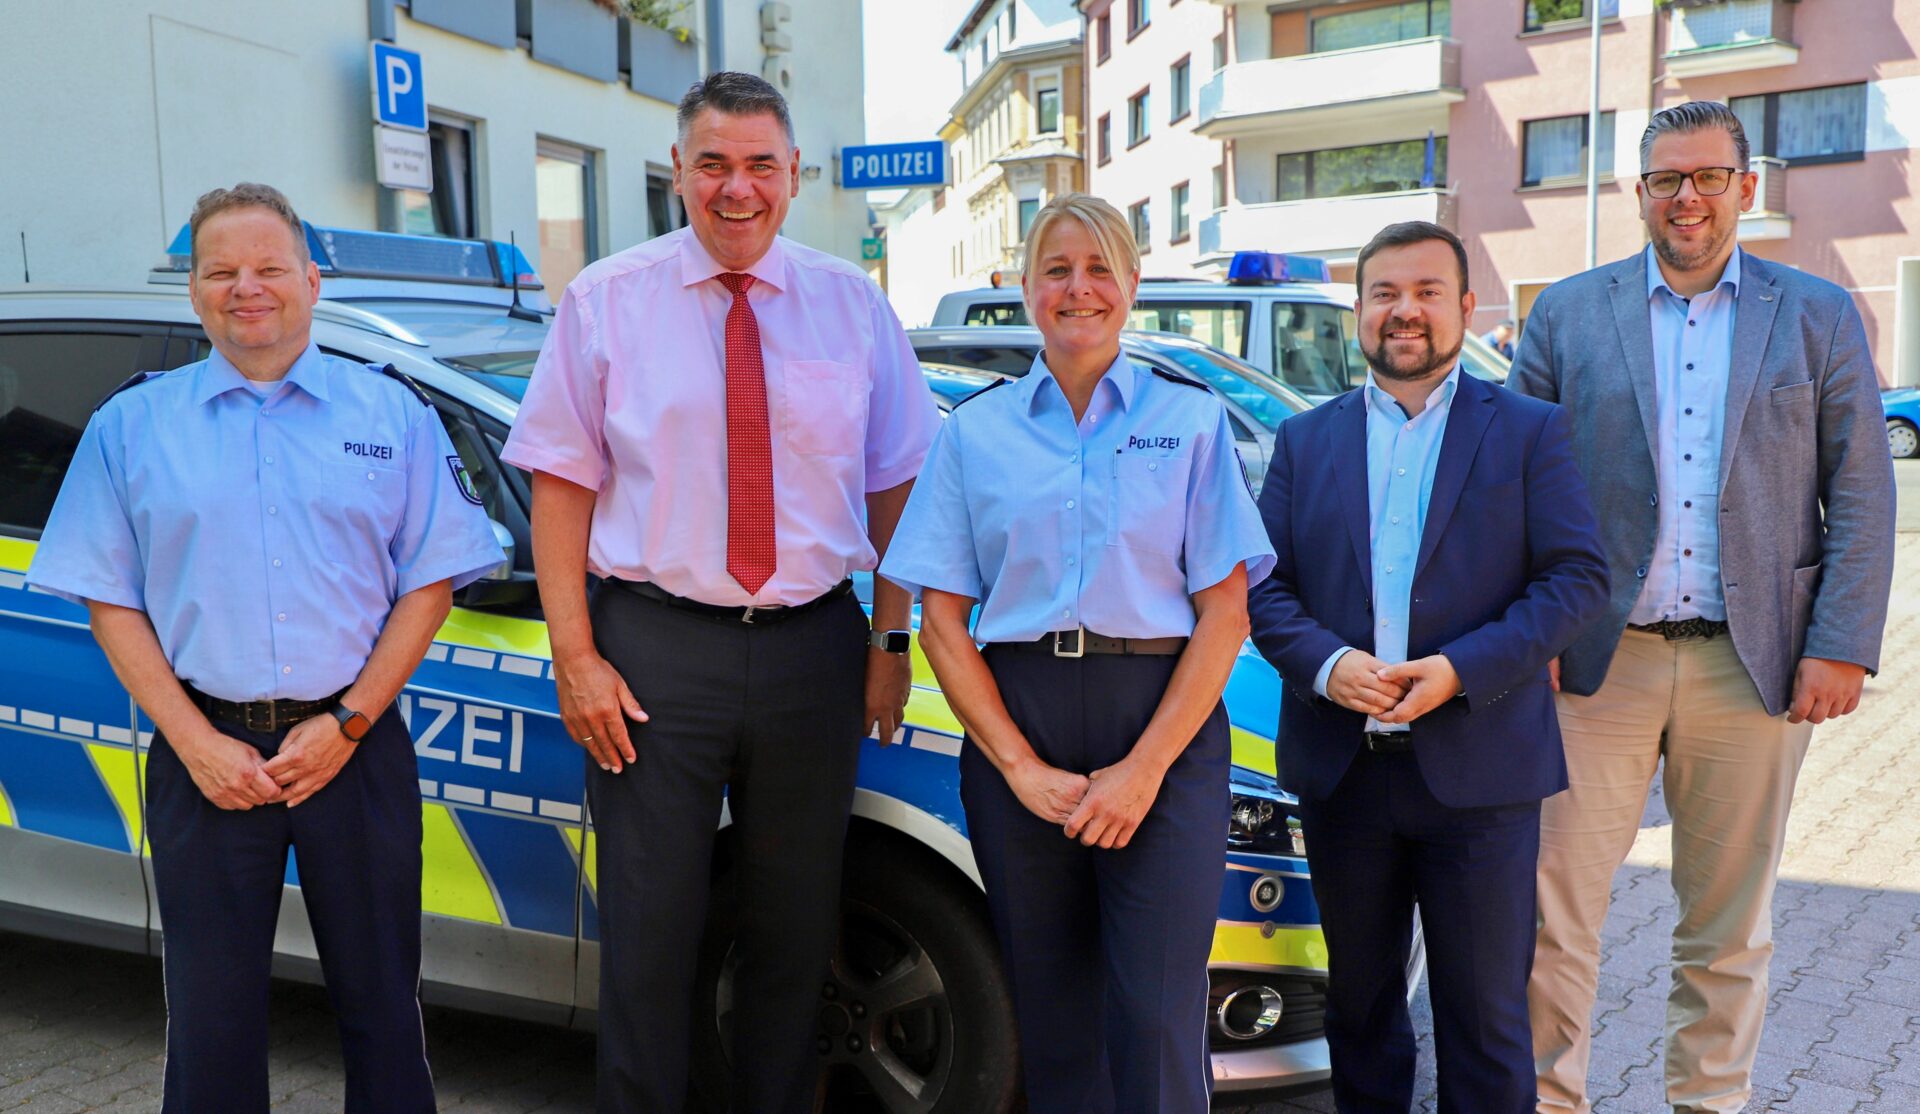 Erste Polizeihauptkommissarin Sonja Wundrock übernimmt die Leitung der Polizeiwache Schwerte